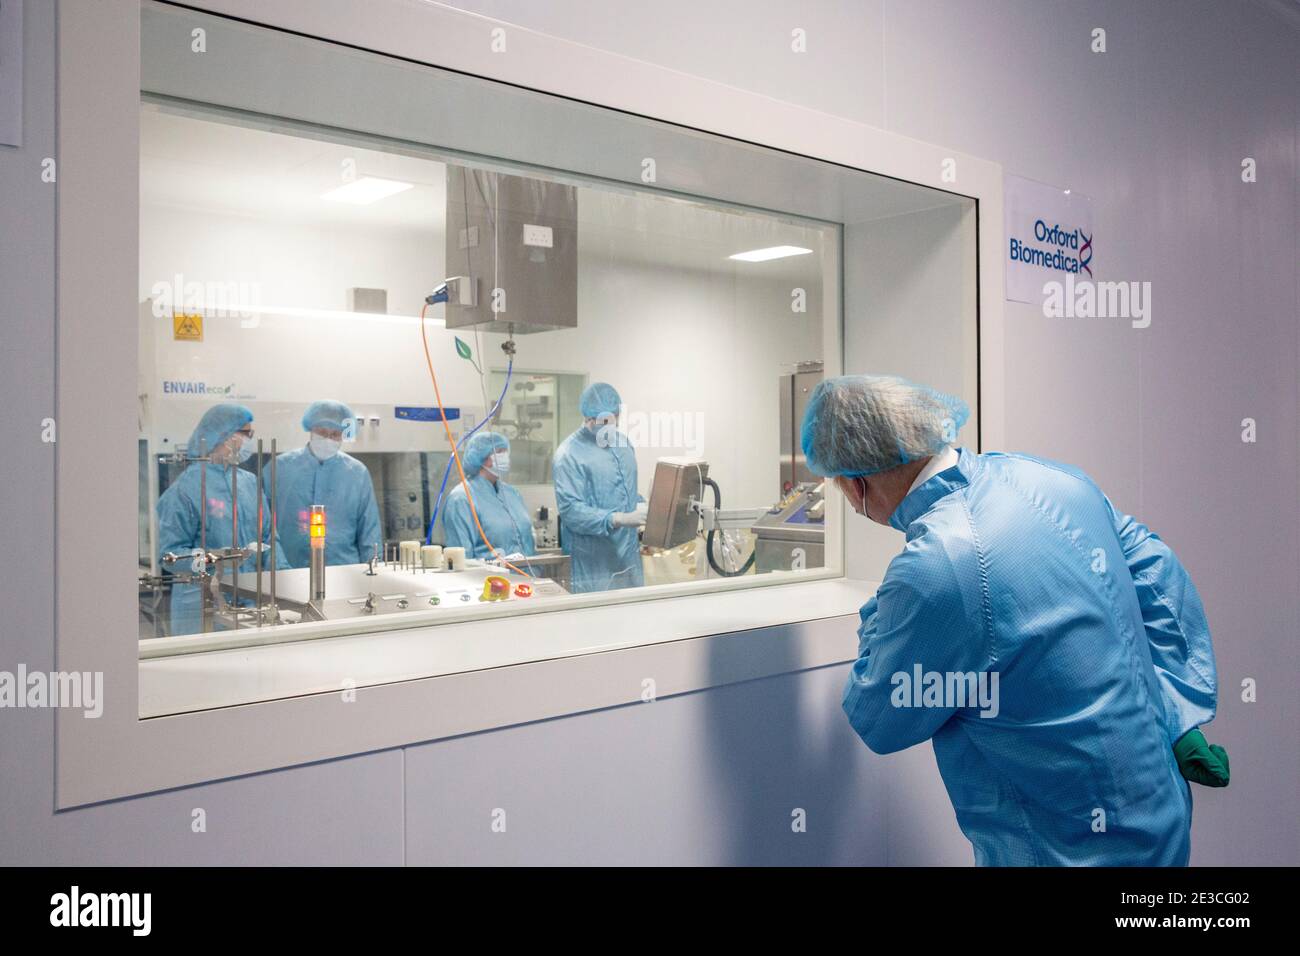 Le Premier ministre Boris Johnson devant une fenêtre d'observation lors d'une visite de l'usine de fabrication du vaccin Oxford/AstraZeneca à Oxford Biomedica dans l'Oxfordshire. Date de la photo: Lundi 18 janvier 2021. Banque D'Images